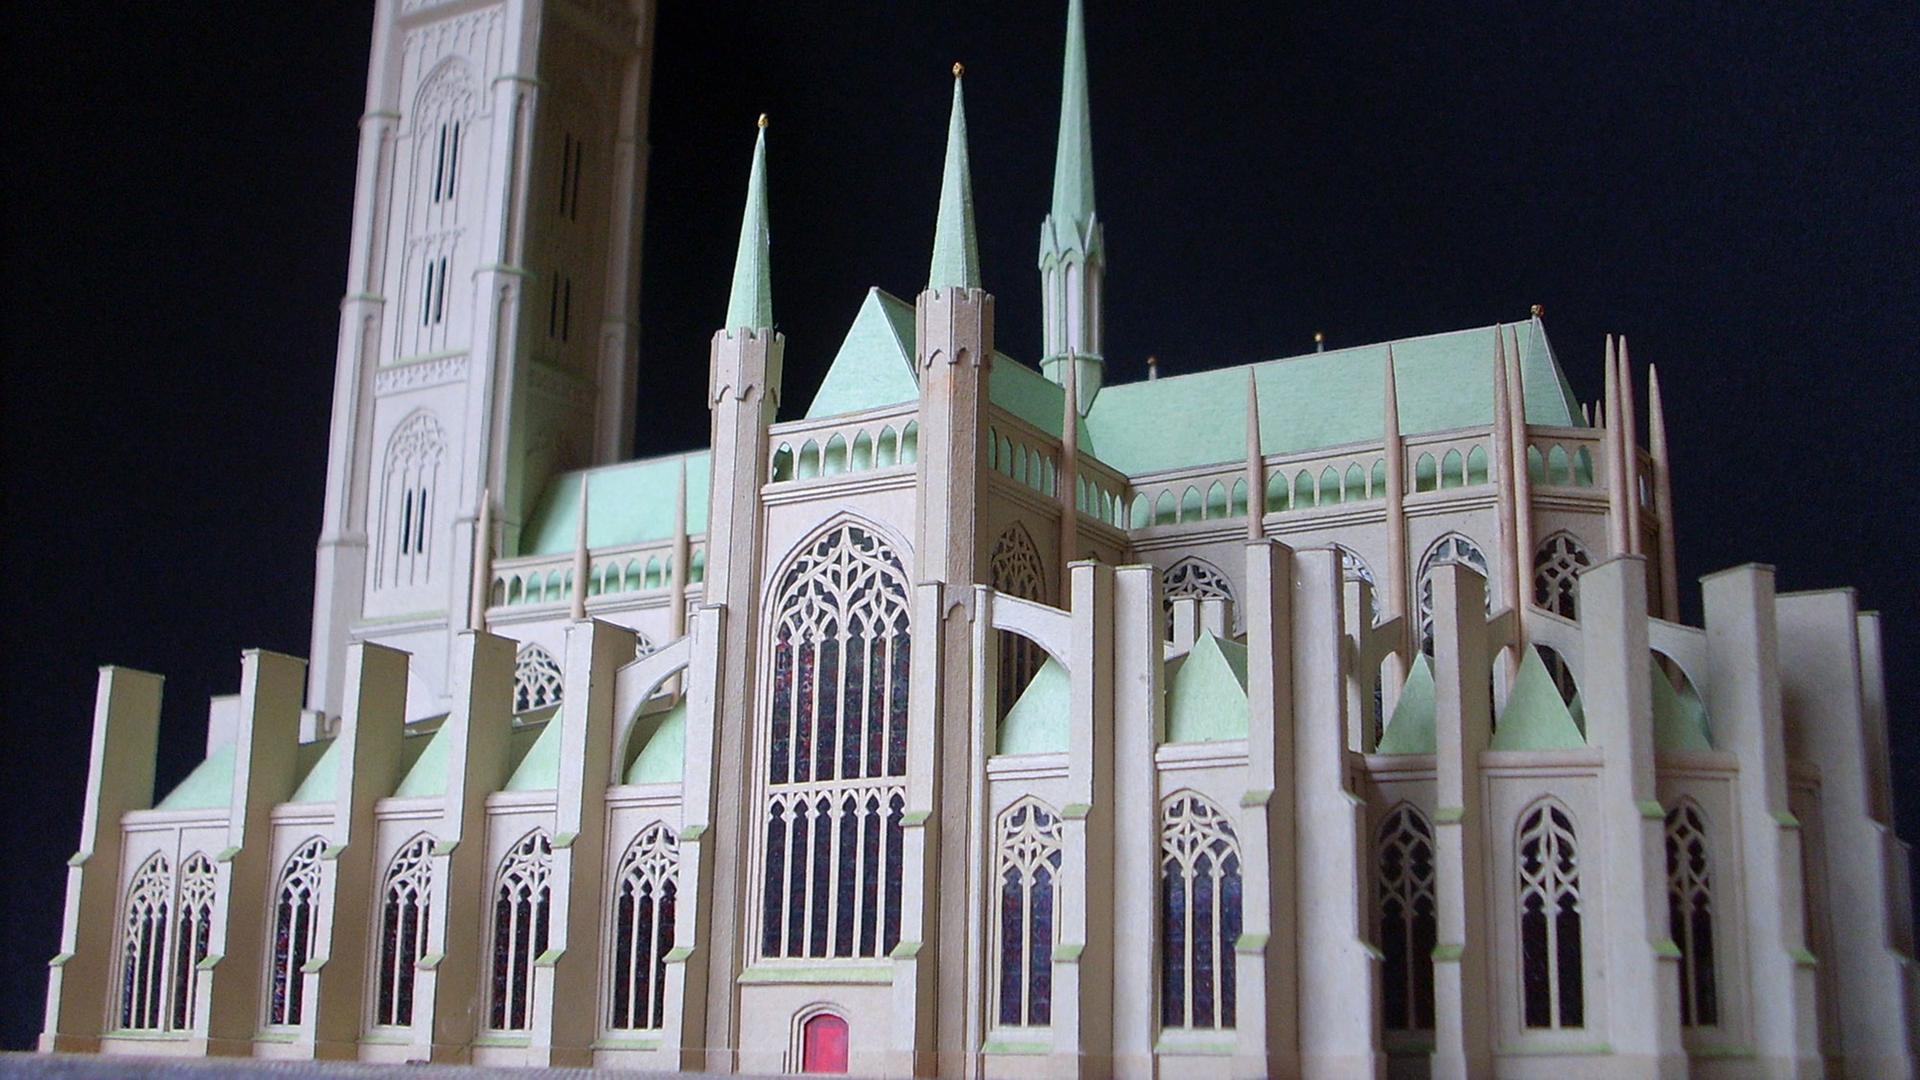 Kirchenmodell aus Pappe und Papier, entstanden 2003 - 2007, erstellt von Rolf Schäfer